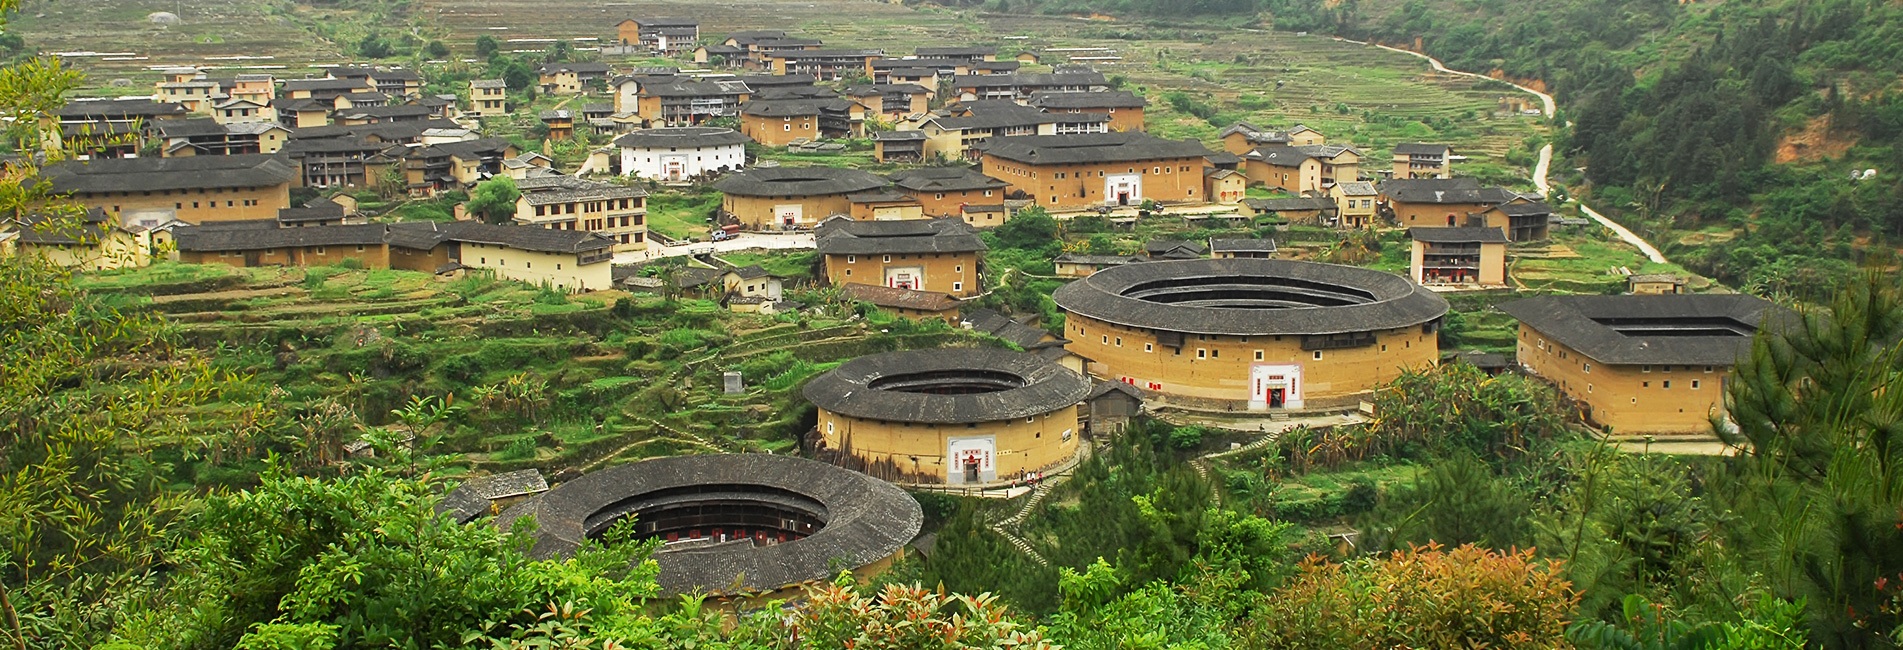 UNESCO-Welterbe Chinas-Tulou in Fujian